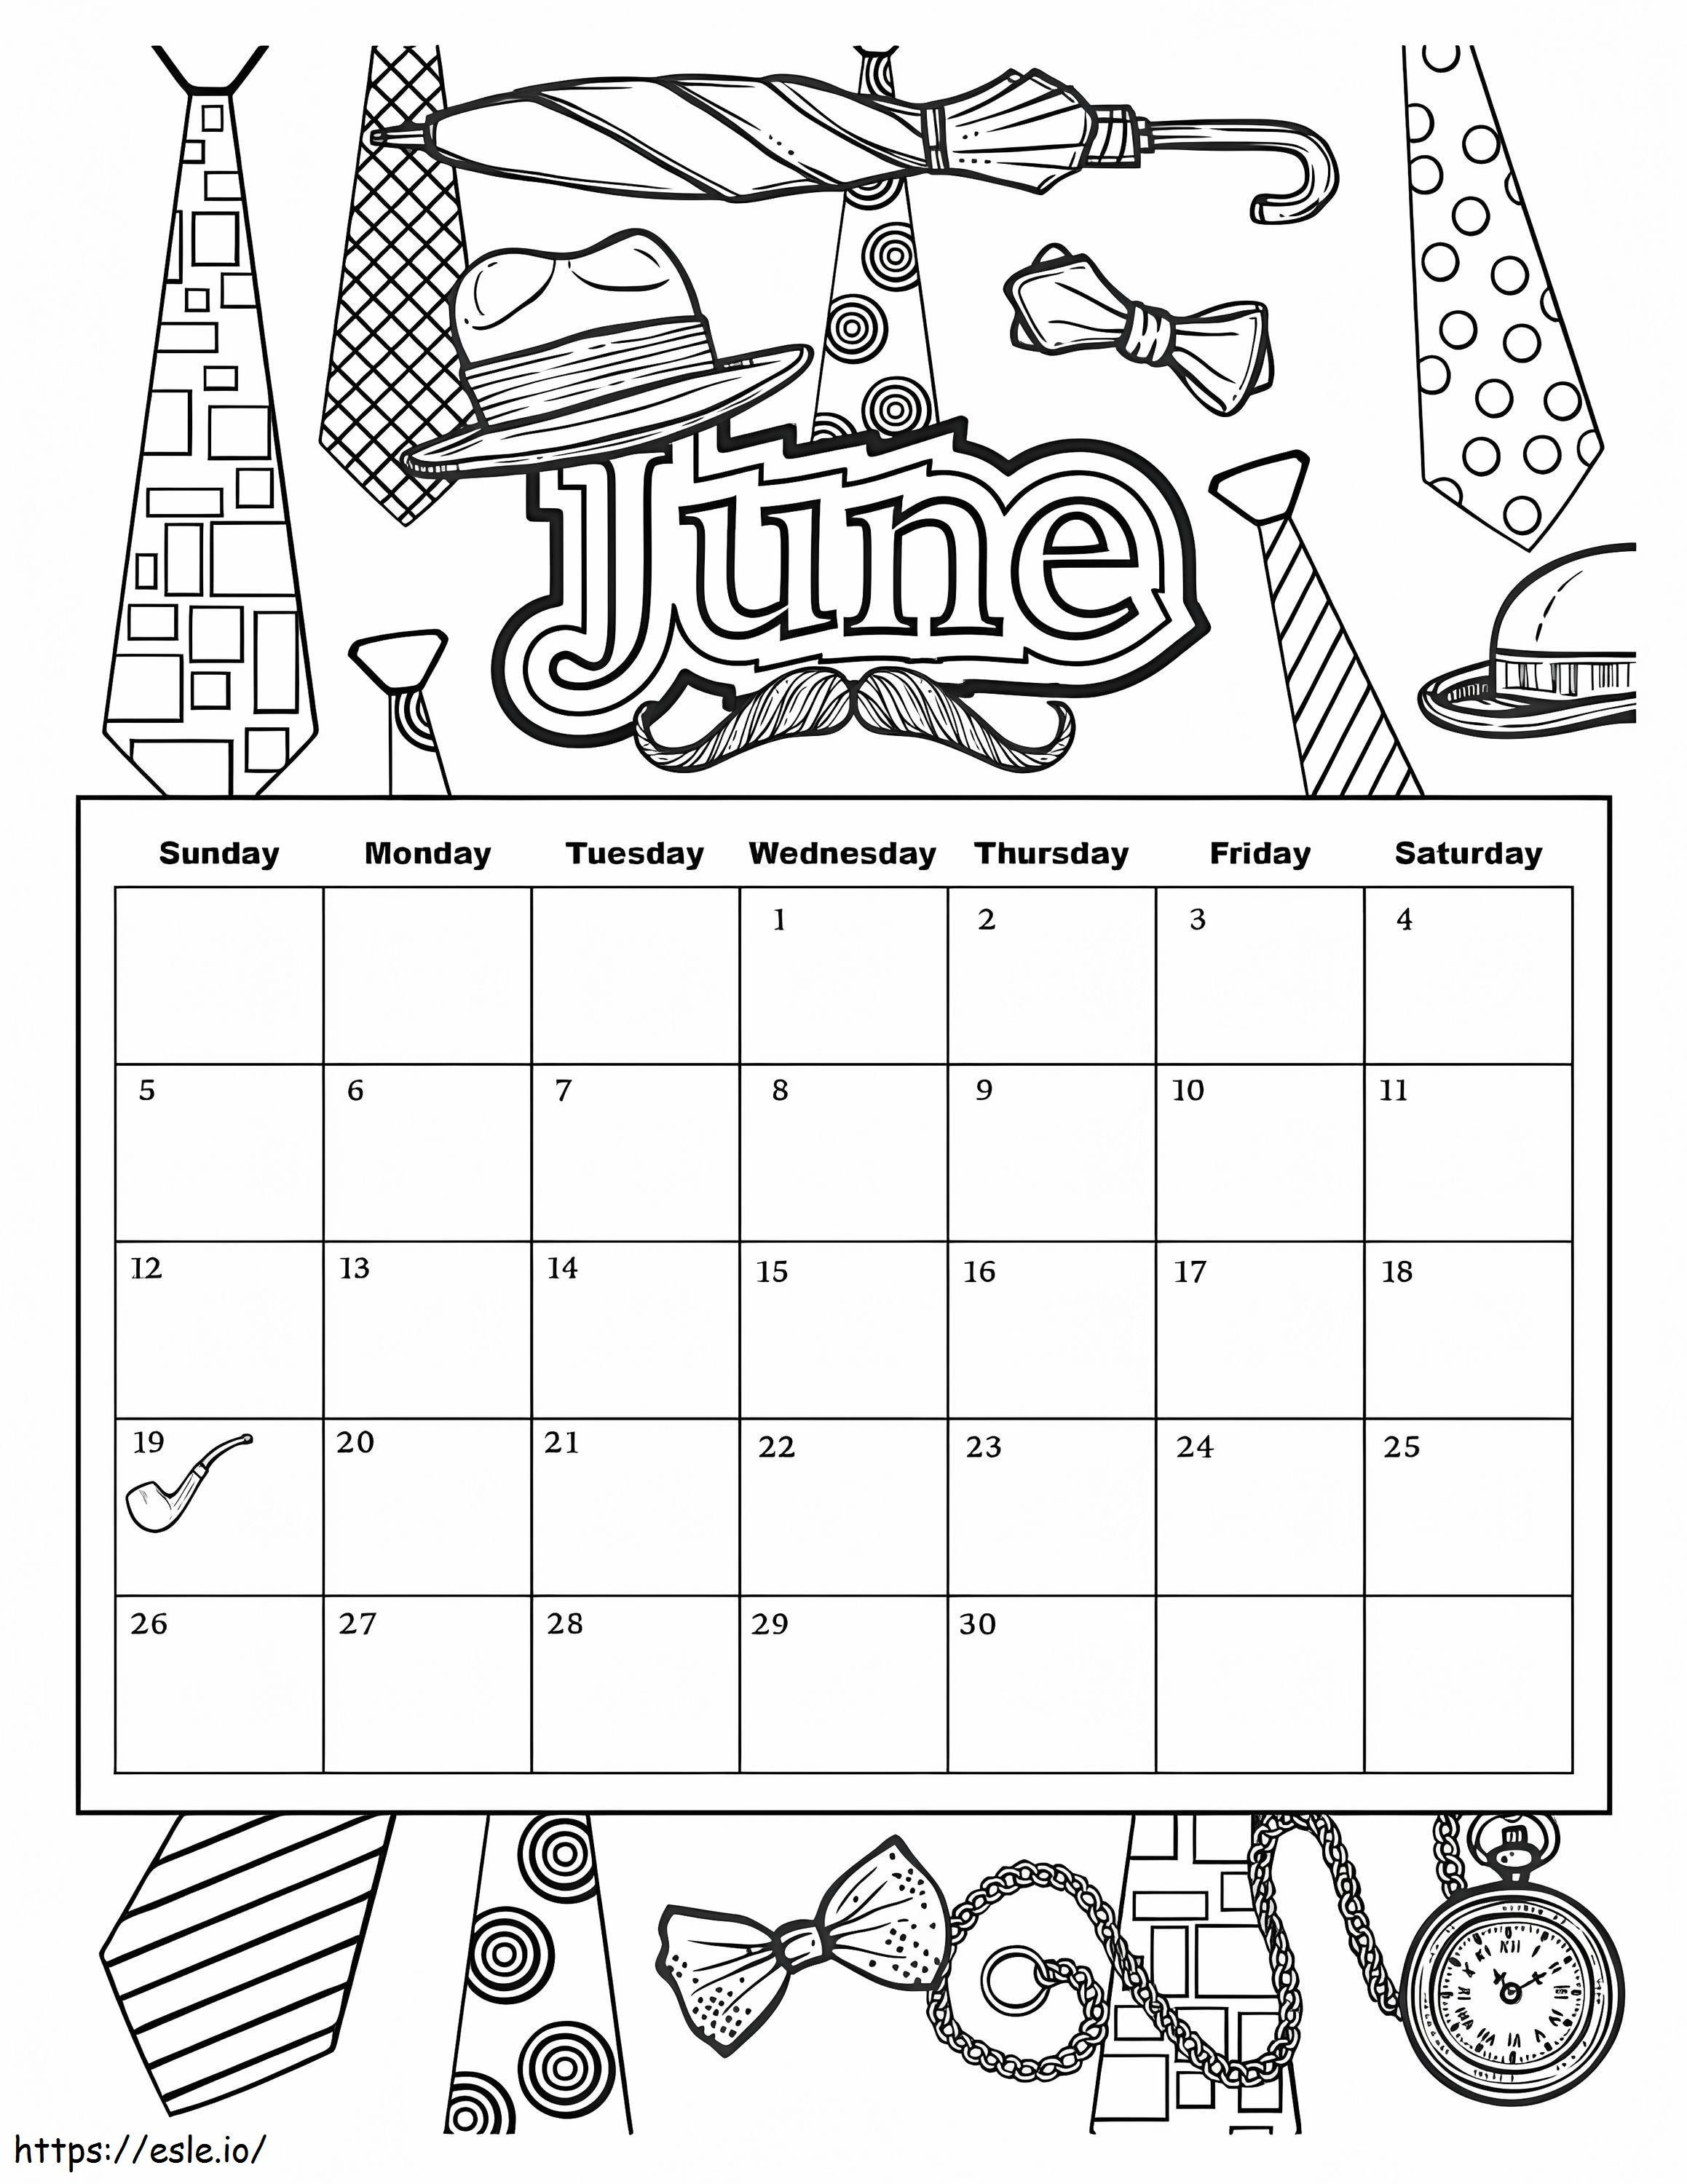 Calendario giugno da colorare